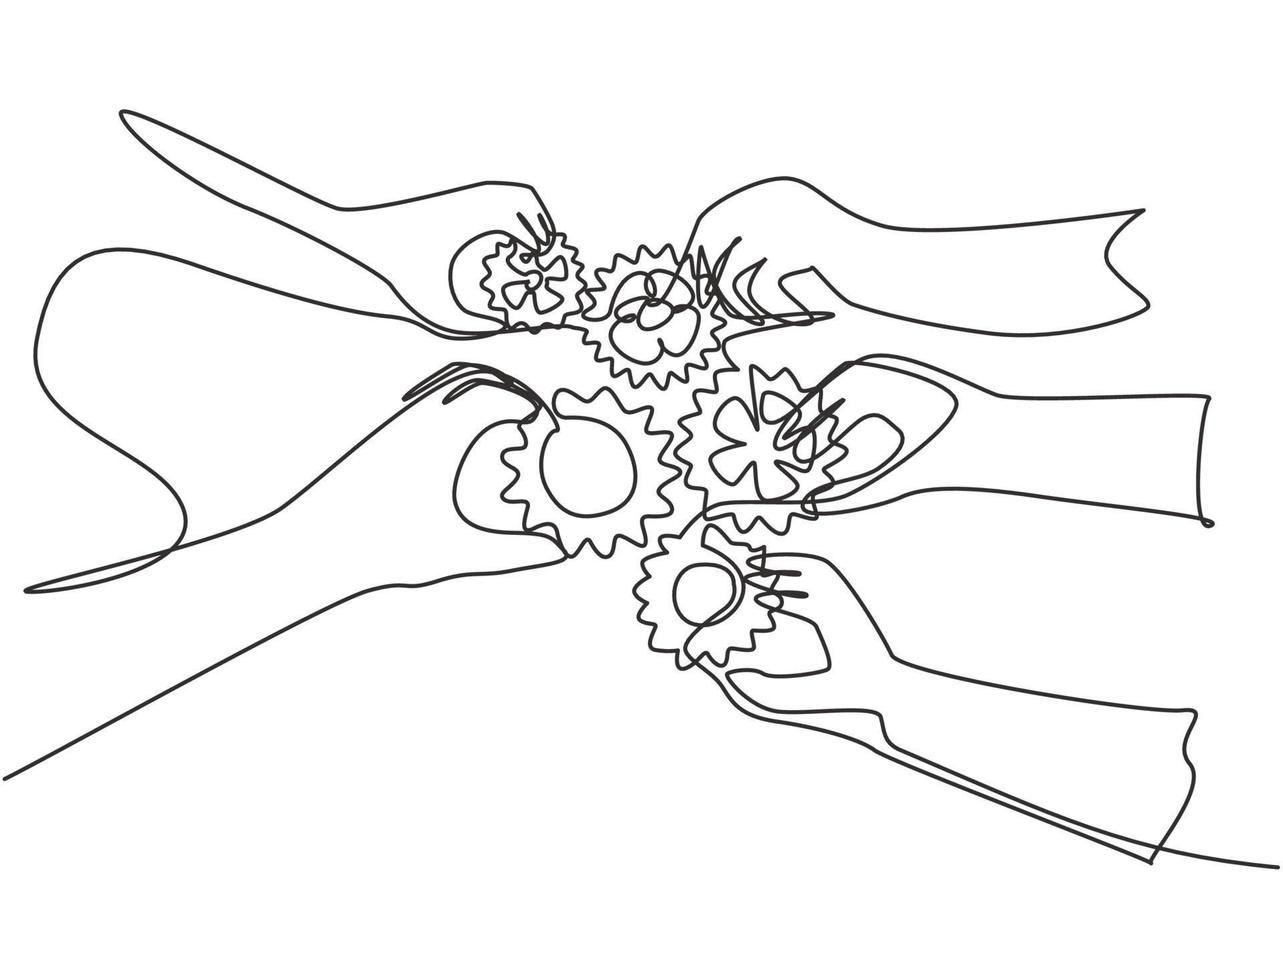 enda kontinuerlig linje ritning av hand gest affärsmedlemmar förenar bit redskap till en som lagarbete symbol. enhet arbetar tillsammans koncept en rad grafisk rita design vektor illustration